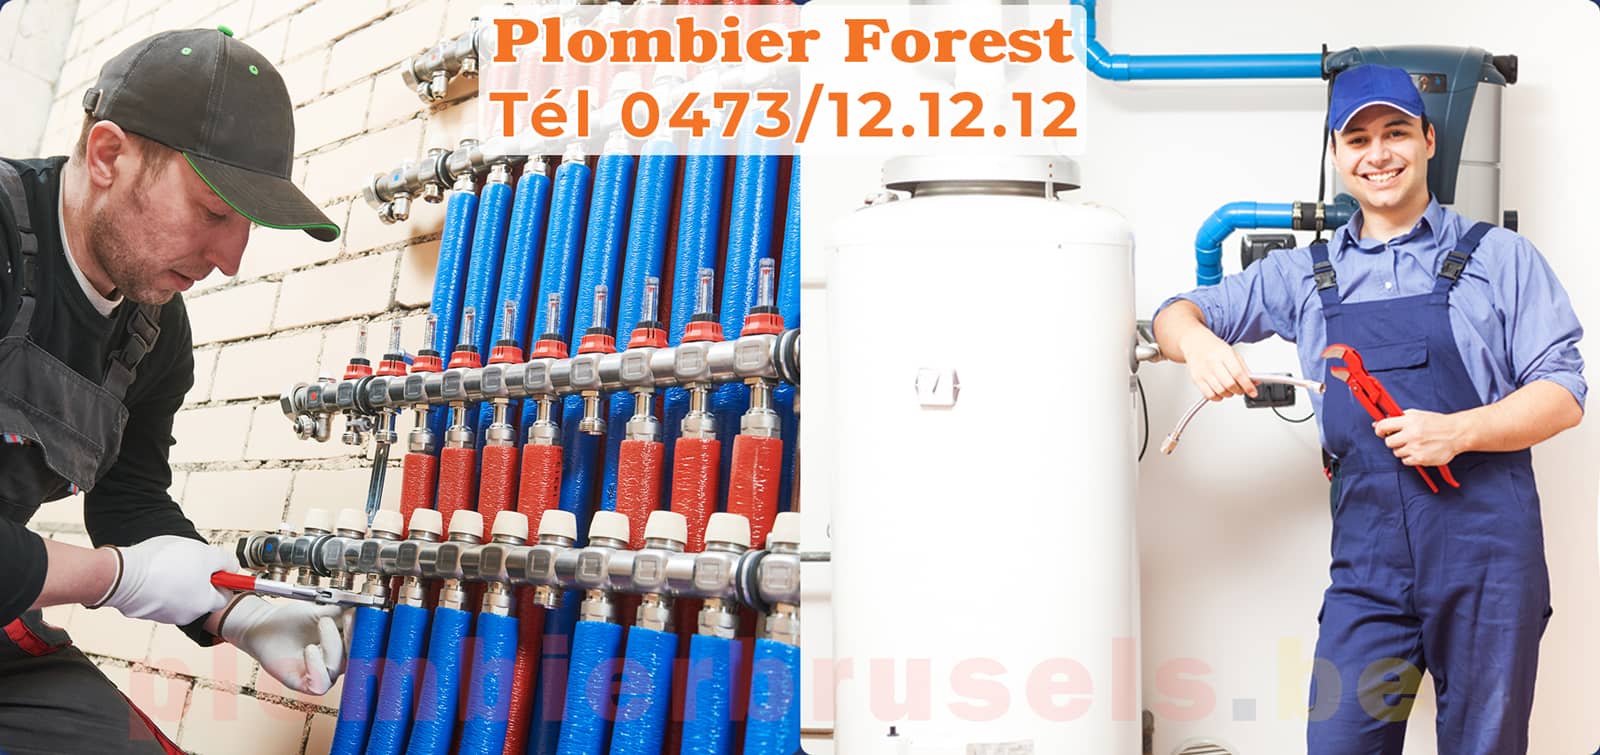 Plombier Forest service de Plomberie tél 0473/12.12.12